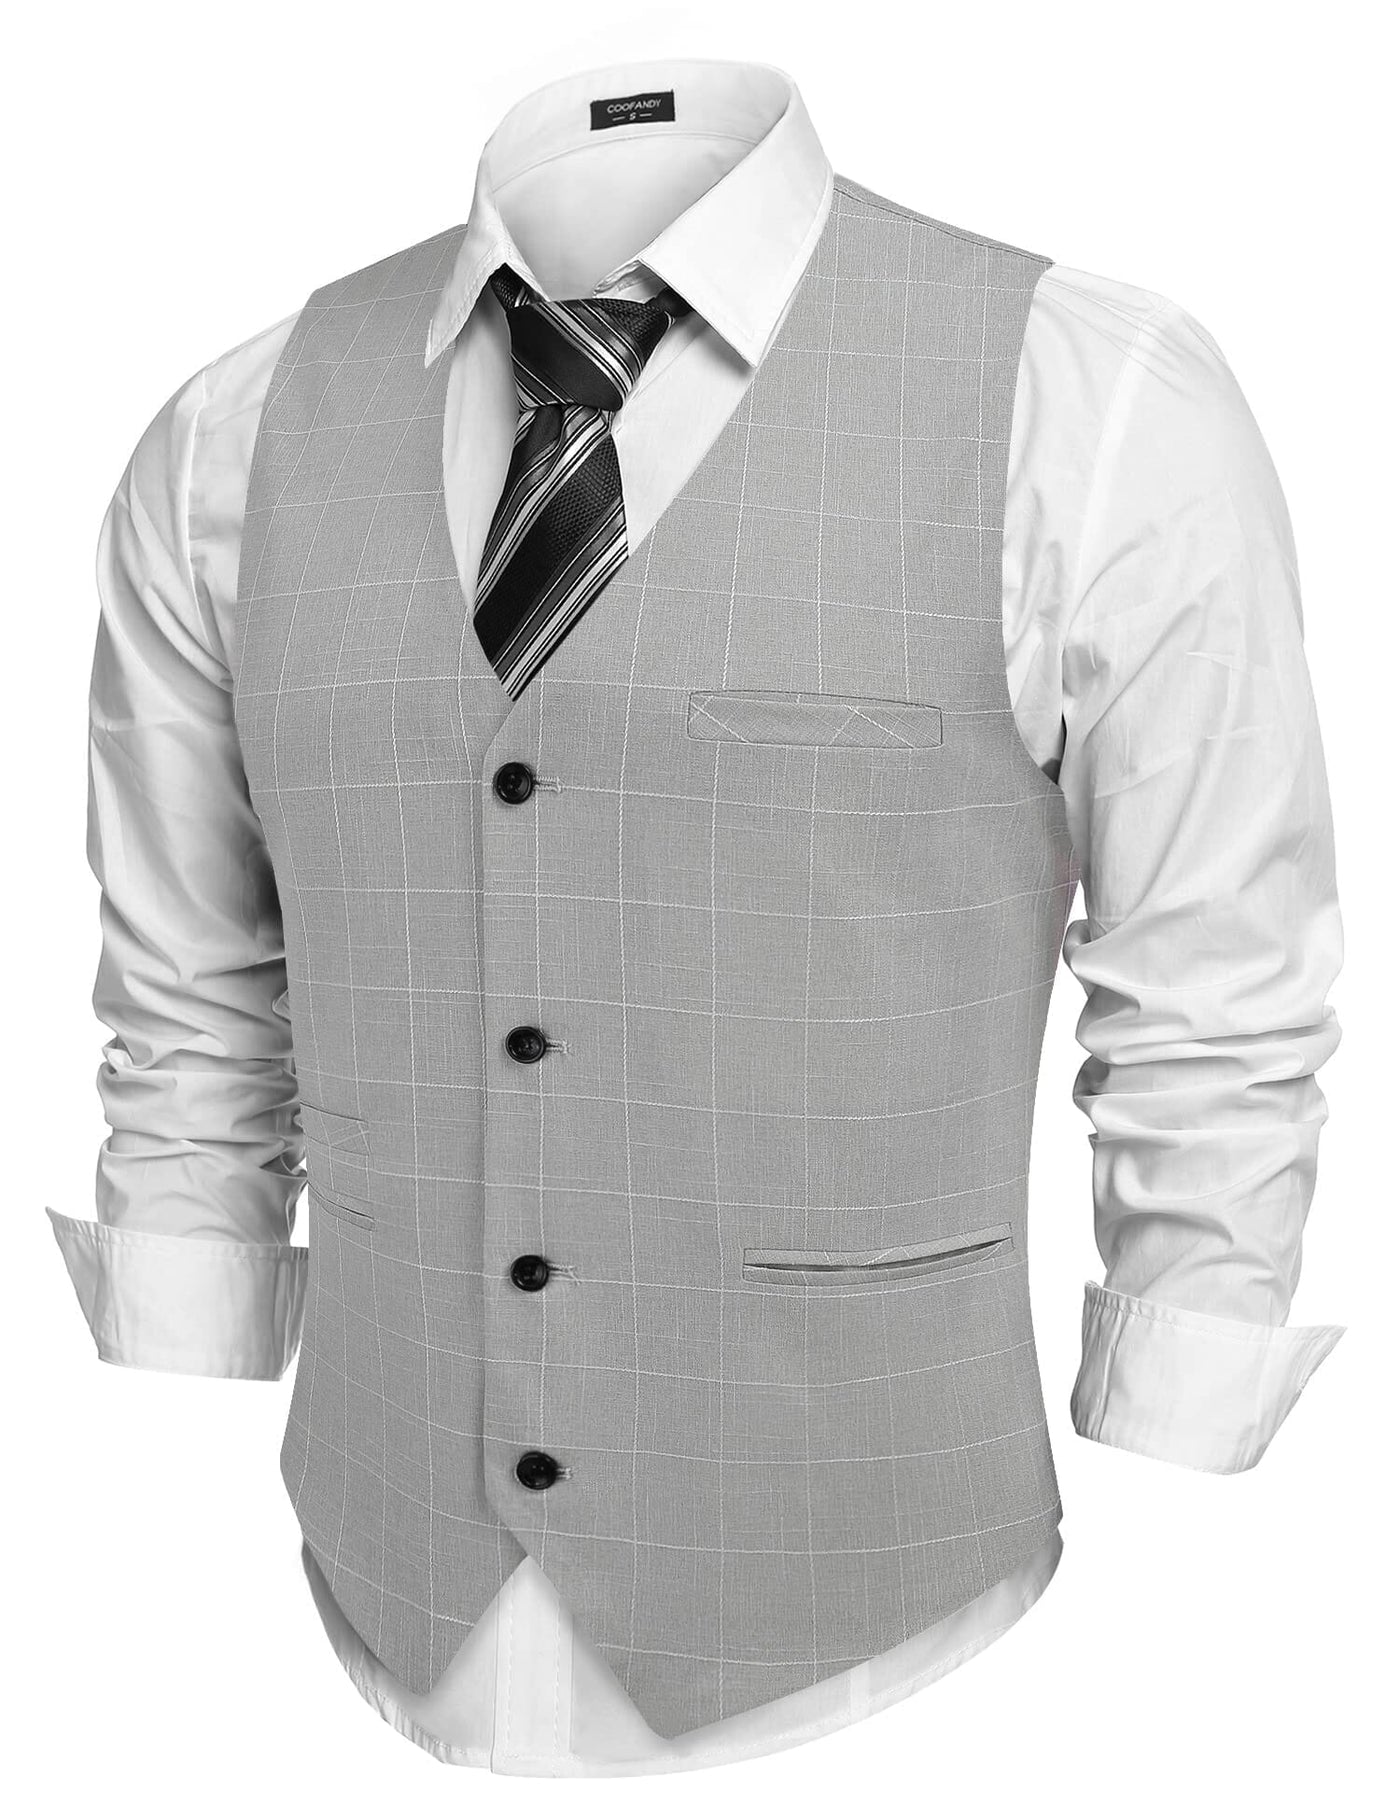 Coofandy Waistcoat Business Vests (US Only) Vest coofandy Light Grey S 